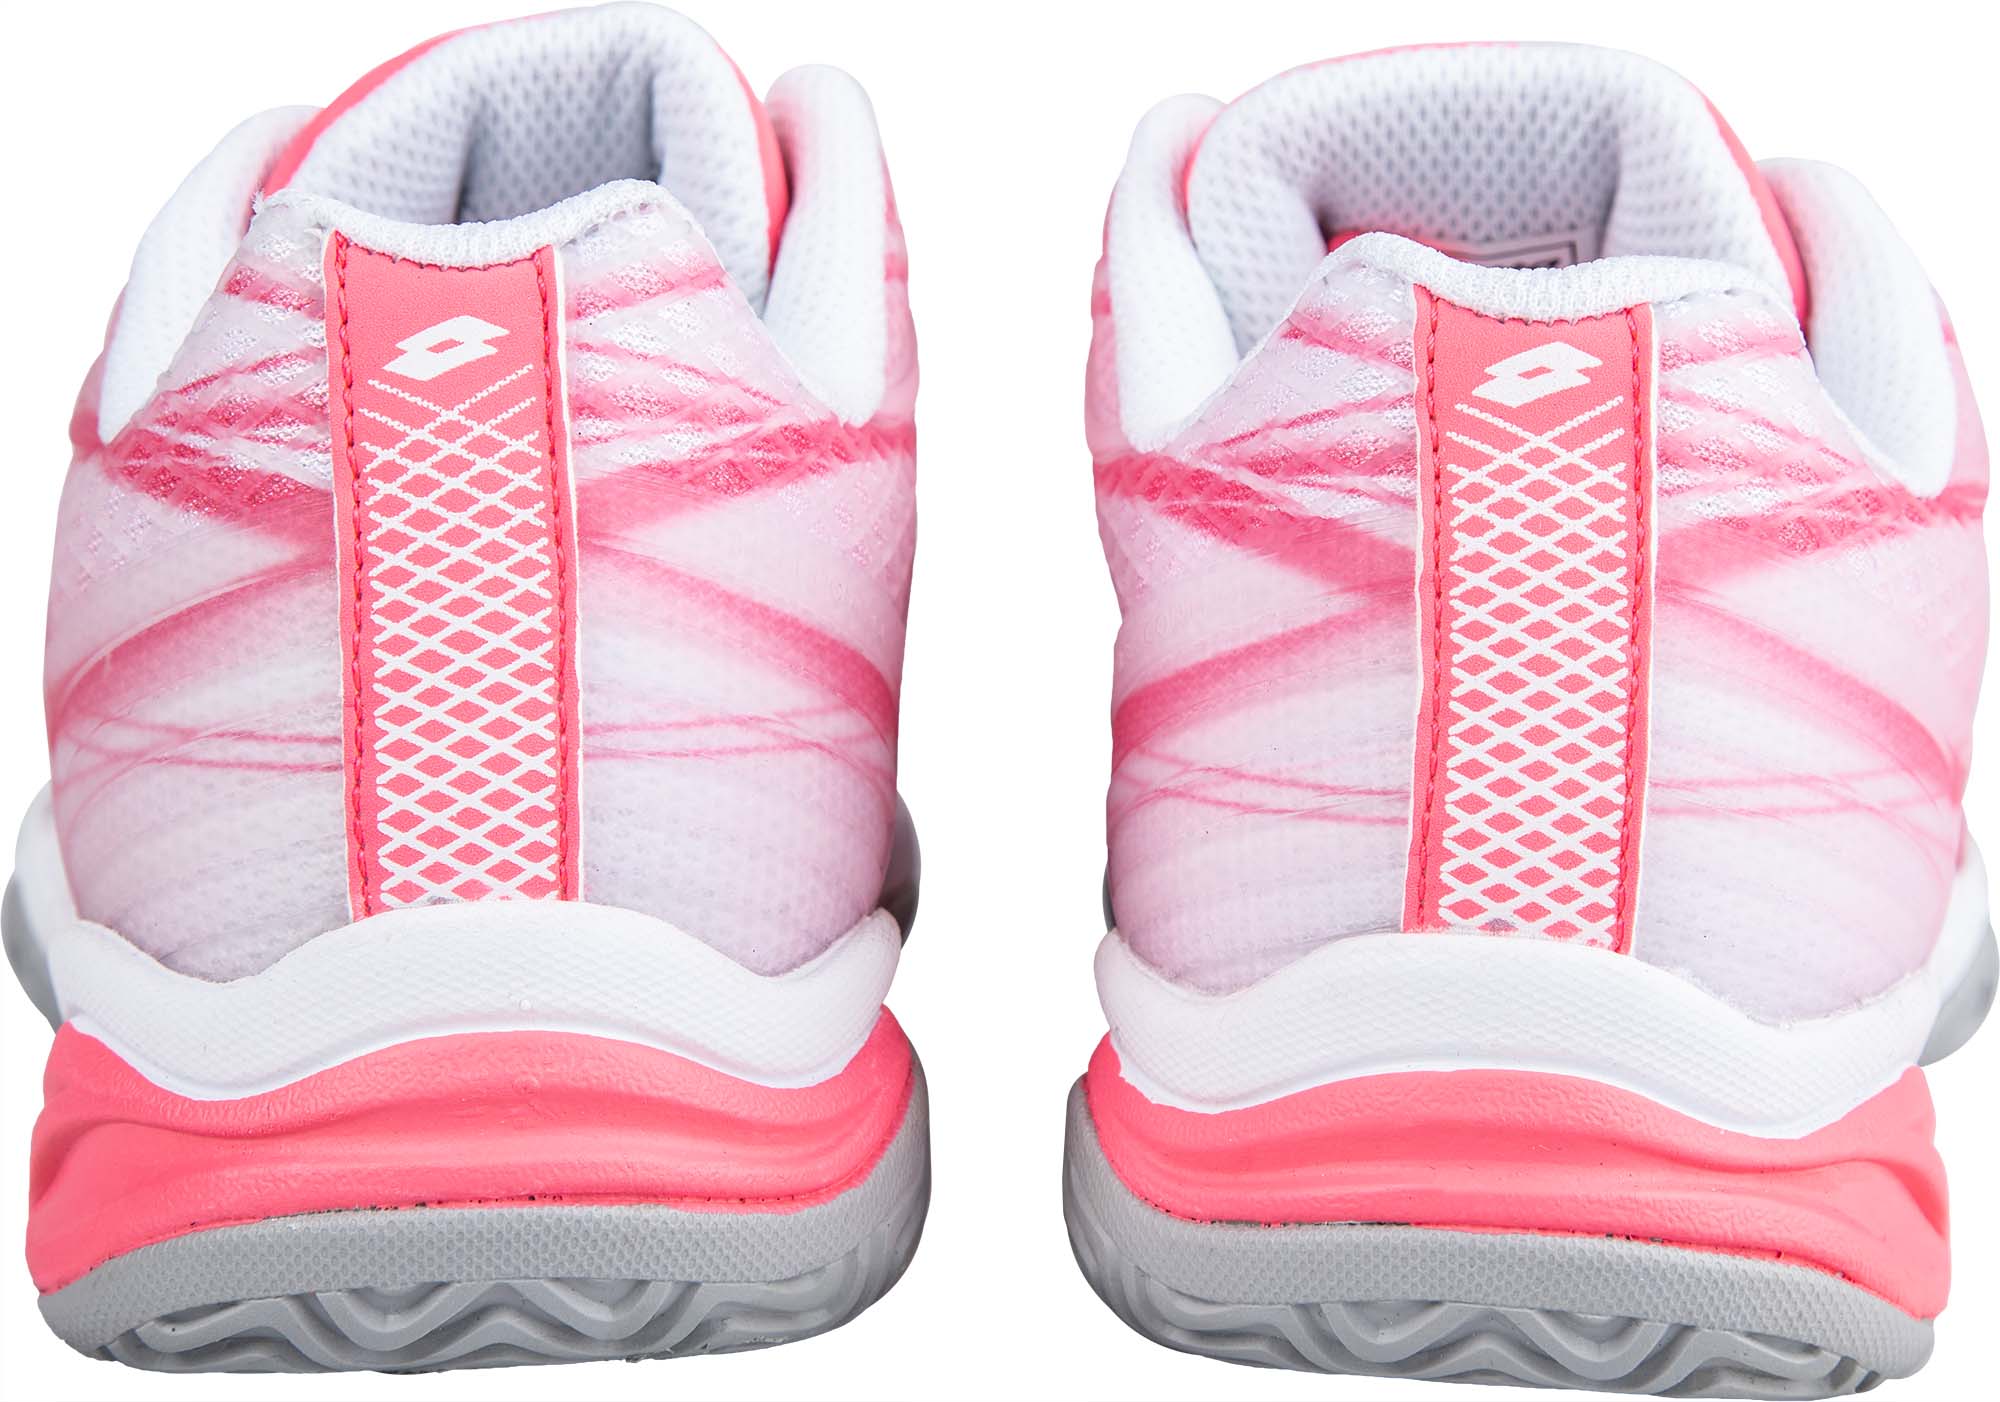 Dievčenská tenisová obuv